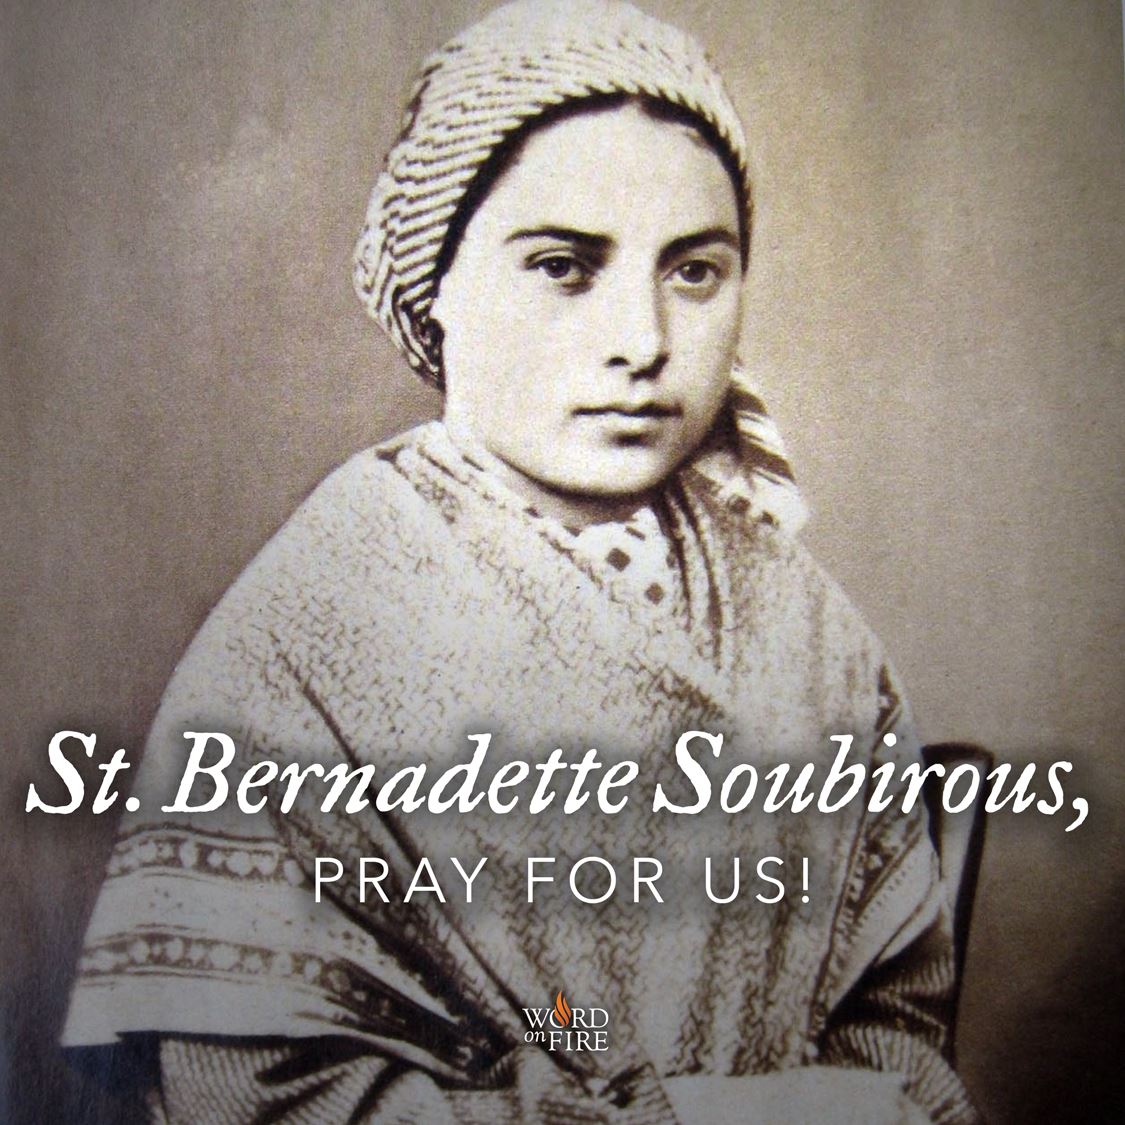 Pray for us! St. Bernadette Soubirous of Lourdes, pray for us!